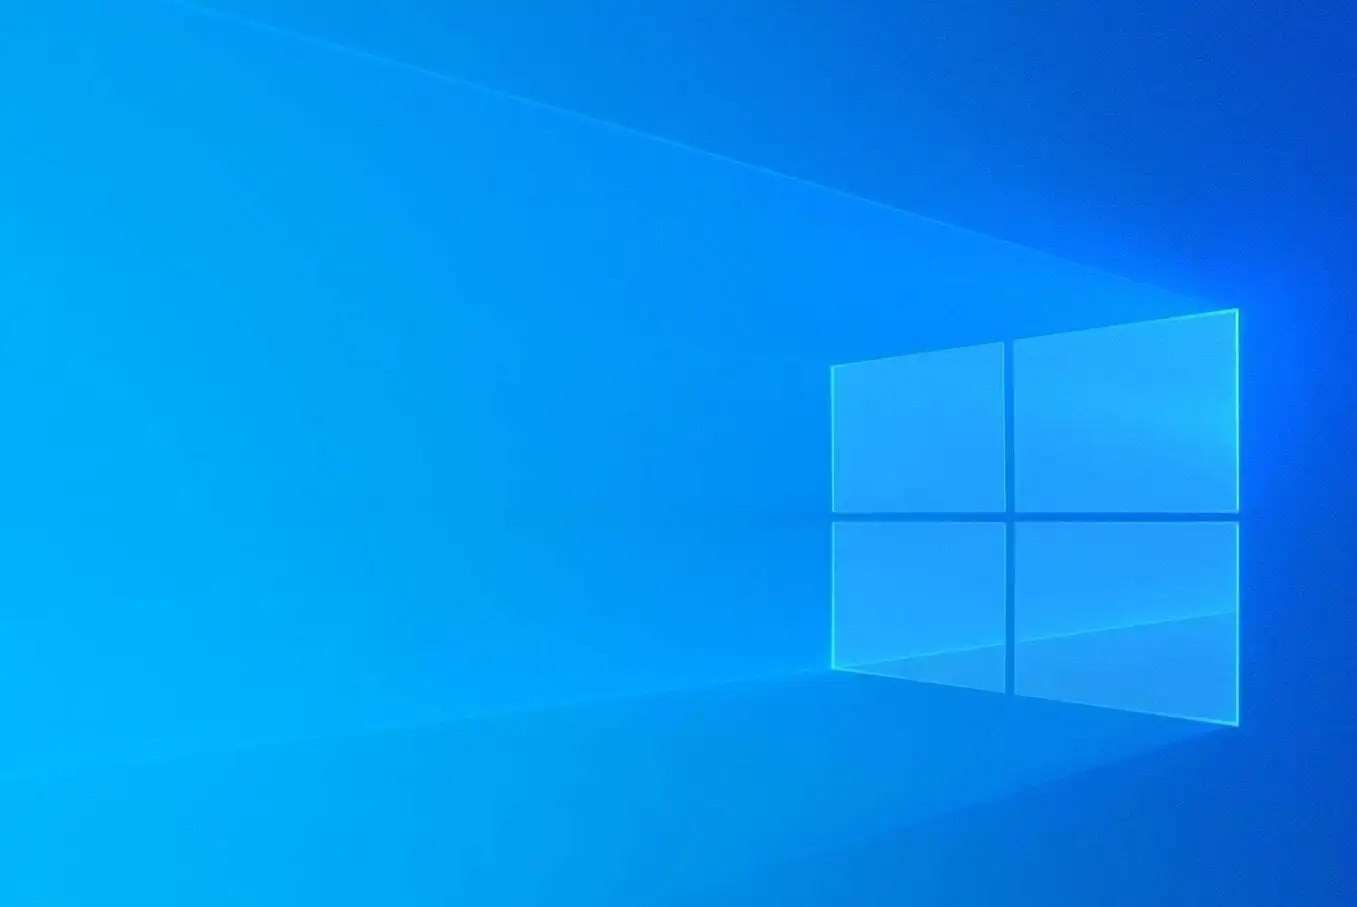 Đã có thể cài hình nền động trên Windows 10 thông qua ứng dụng trên  Microsoft Store  ViecLamITCareerBuildervn